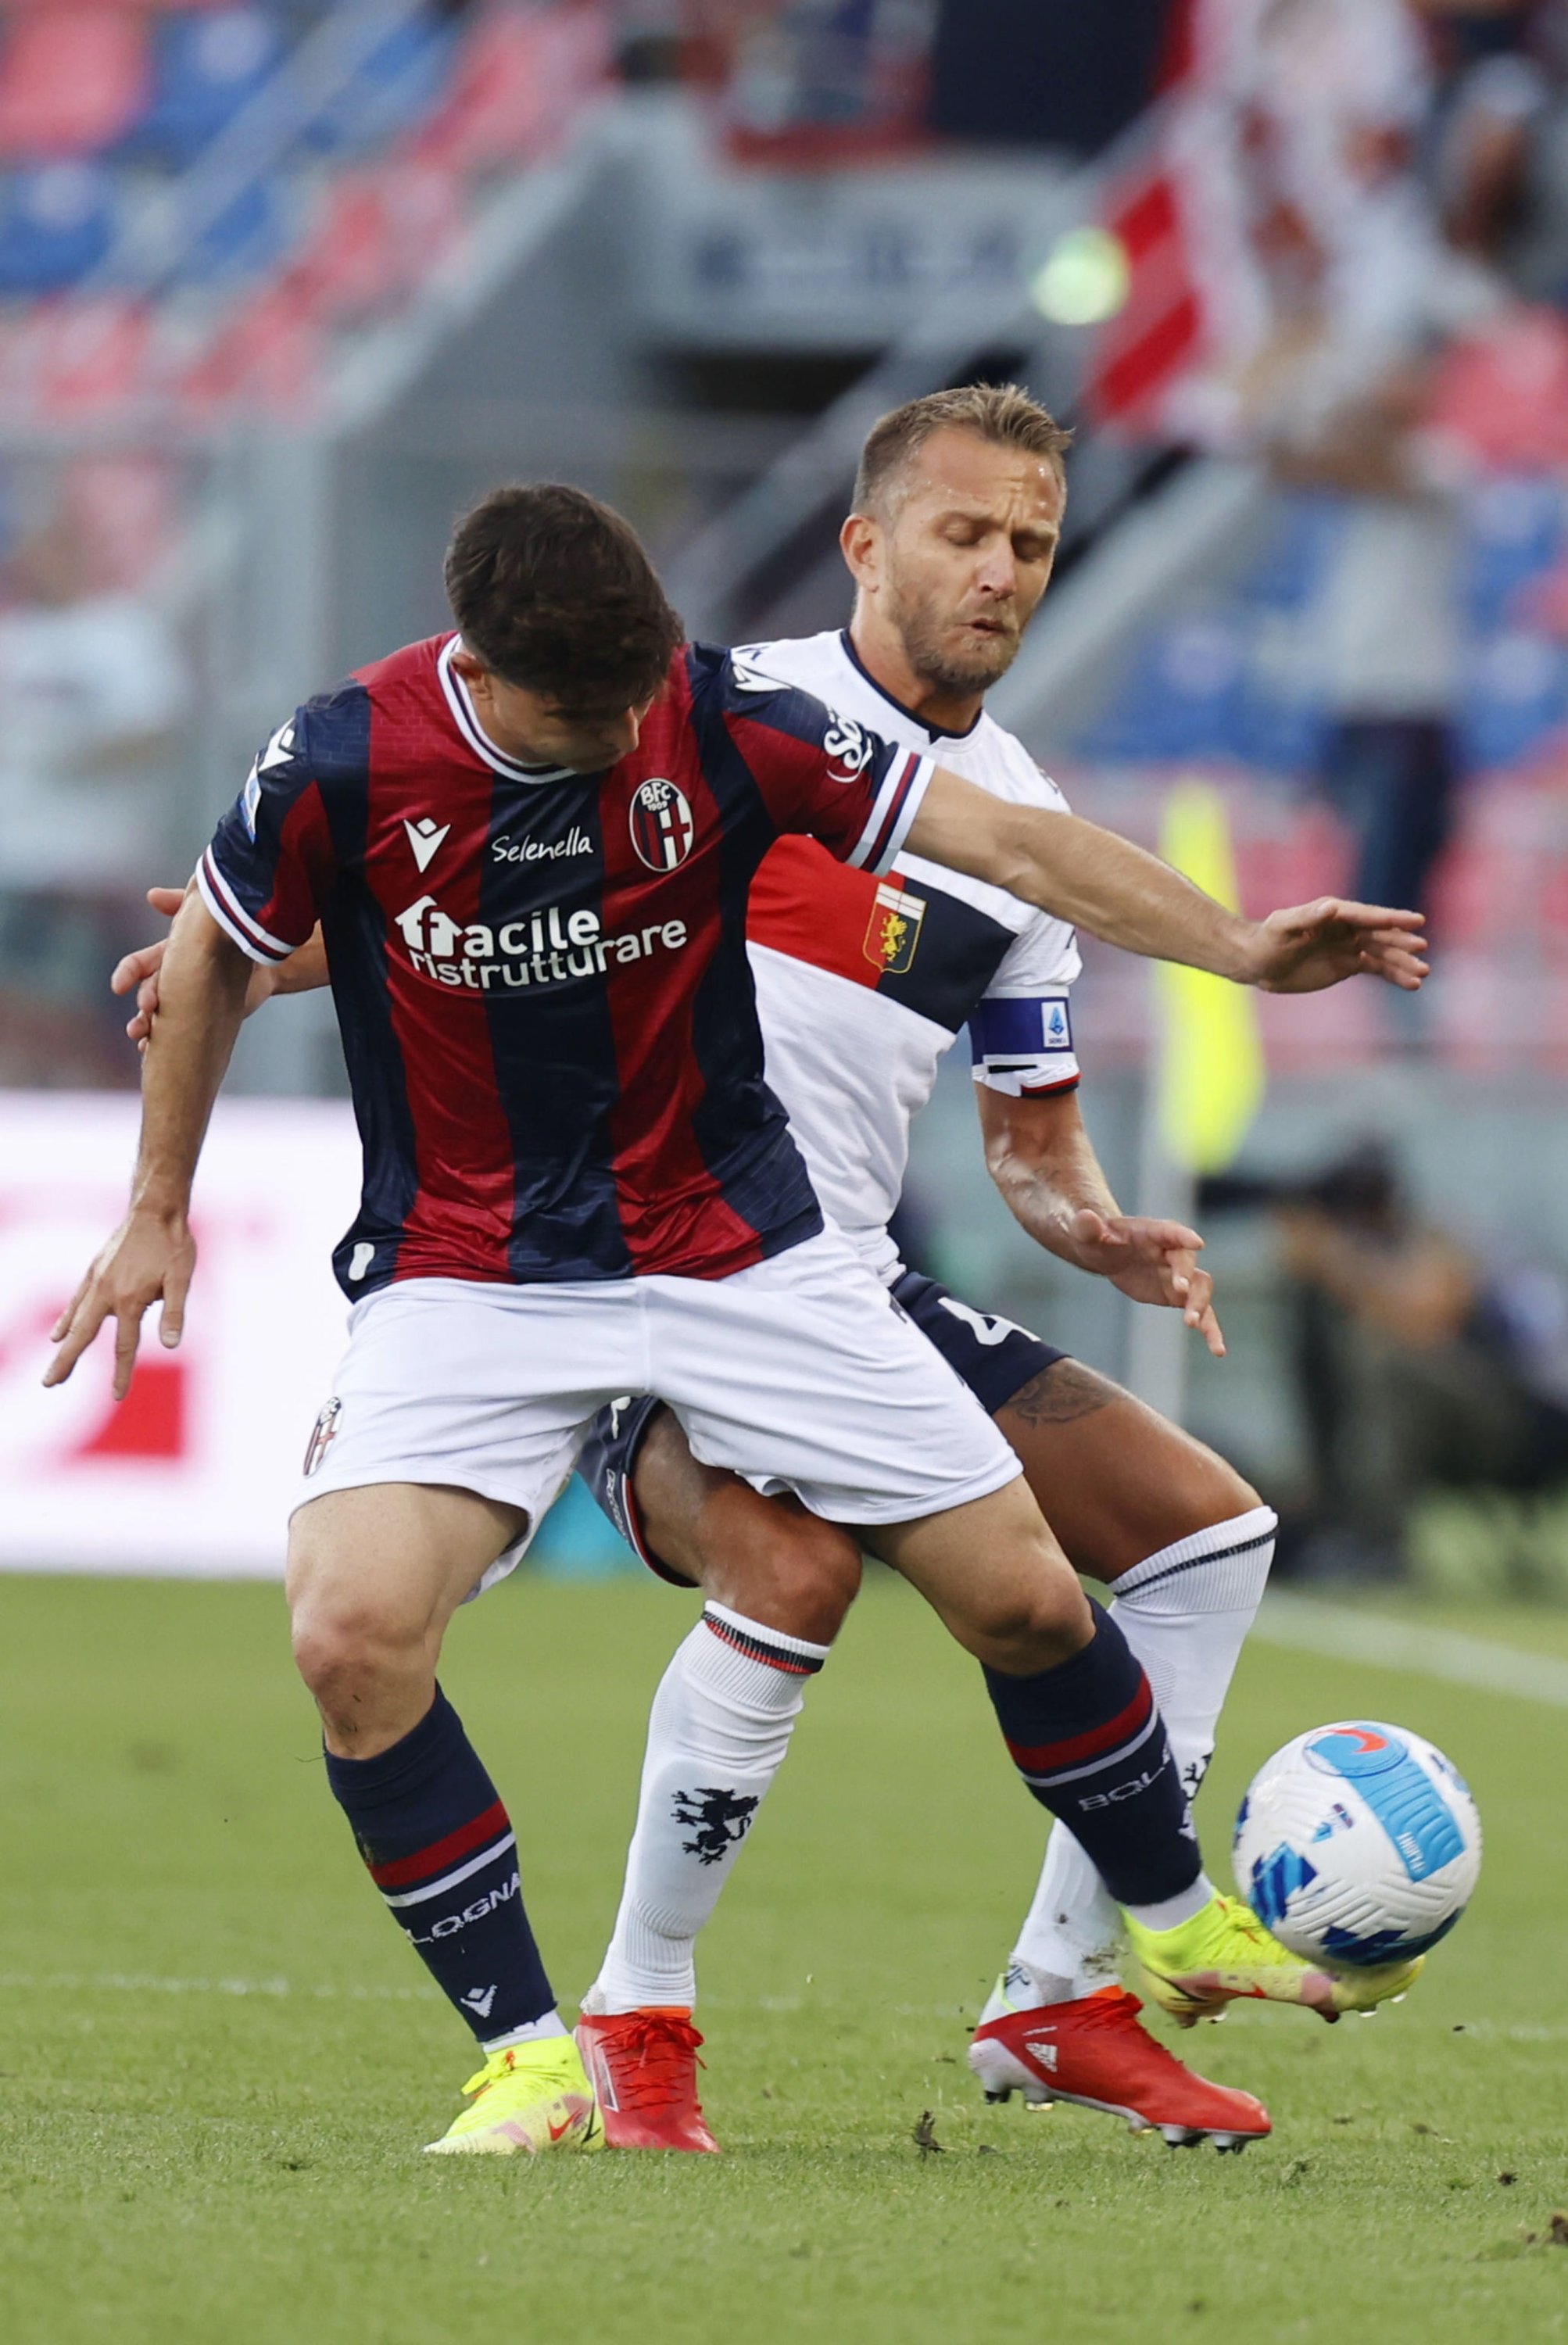 Bologna's Riccardo Orsolini (L) and Genoa's Domenico Criscito (R) in action during a Serie A match at Renato Dall'Ara stadium in Bologna, Italy, Sept. 21, 2021. (EPA Photo)